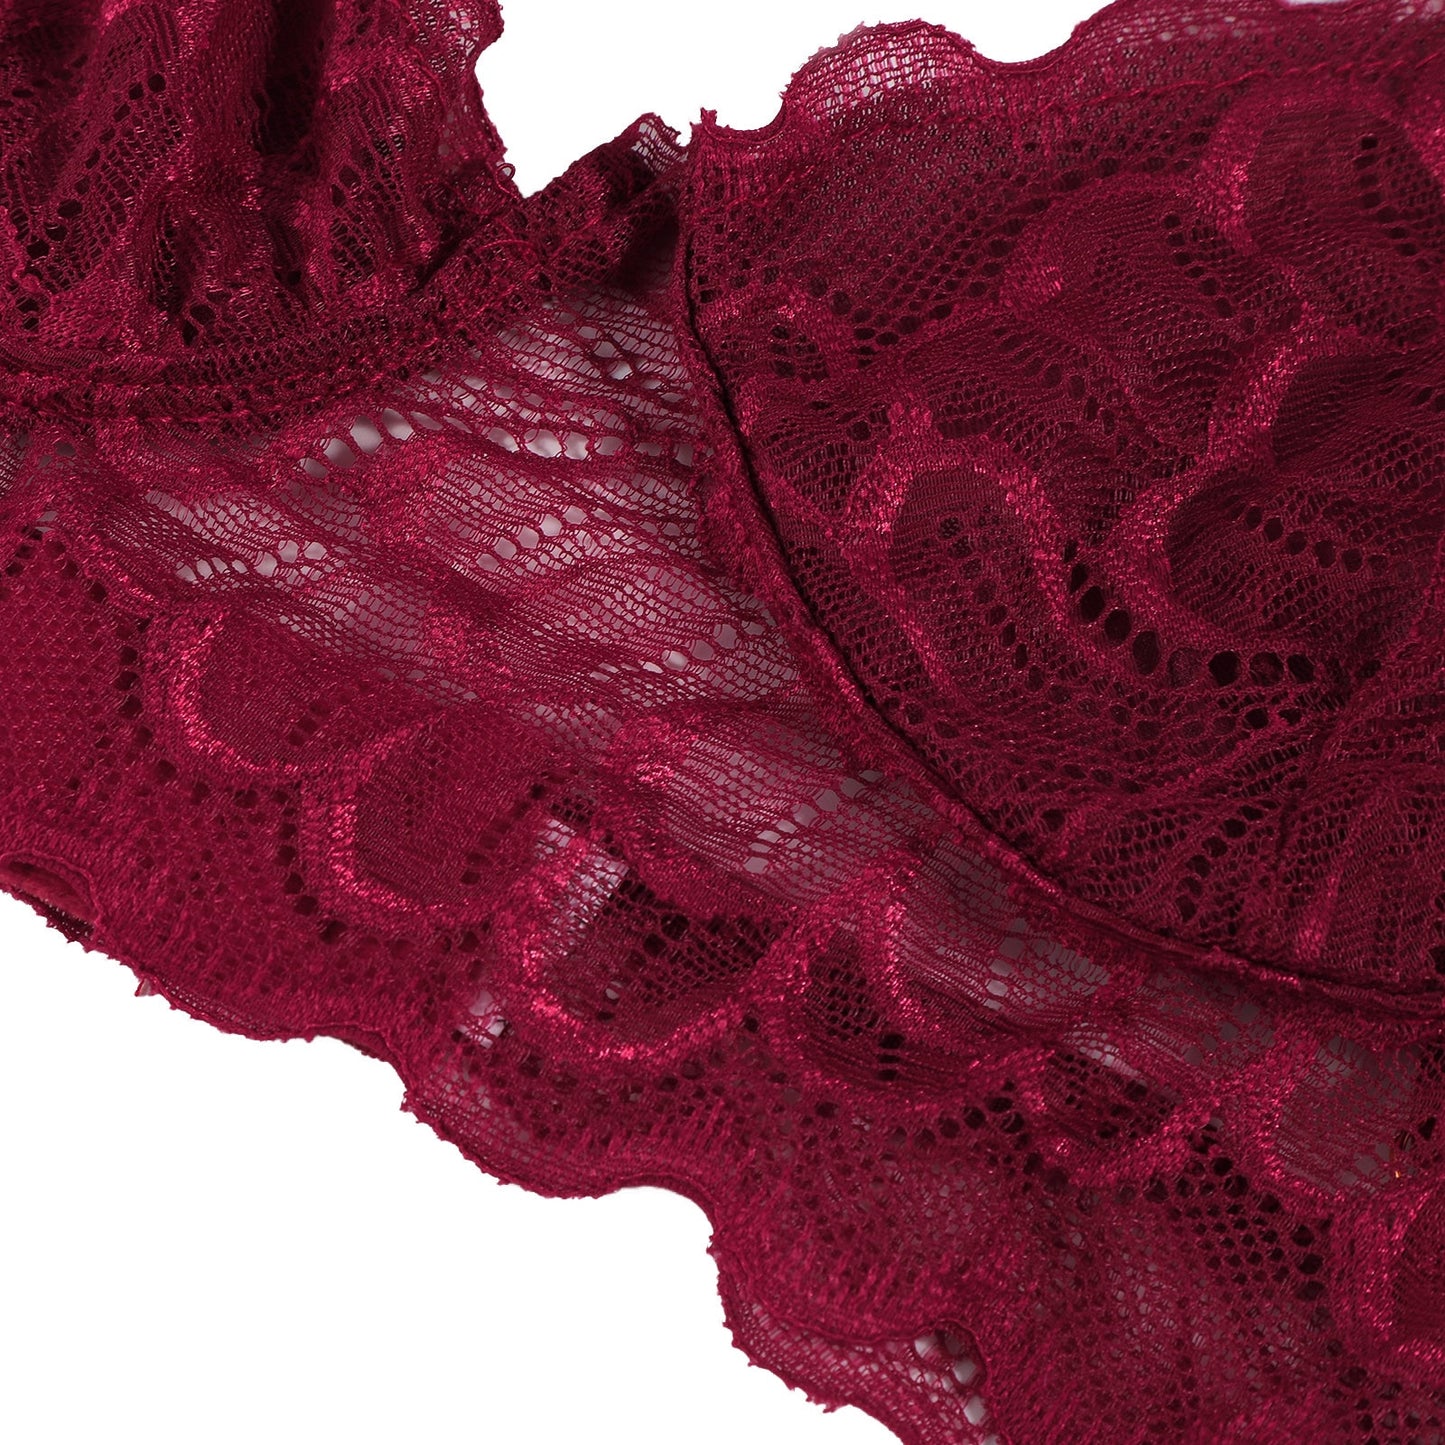 3PC Strap Lace Crochet Cutout Lingerie Set With Garter